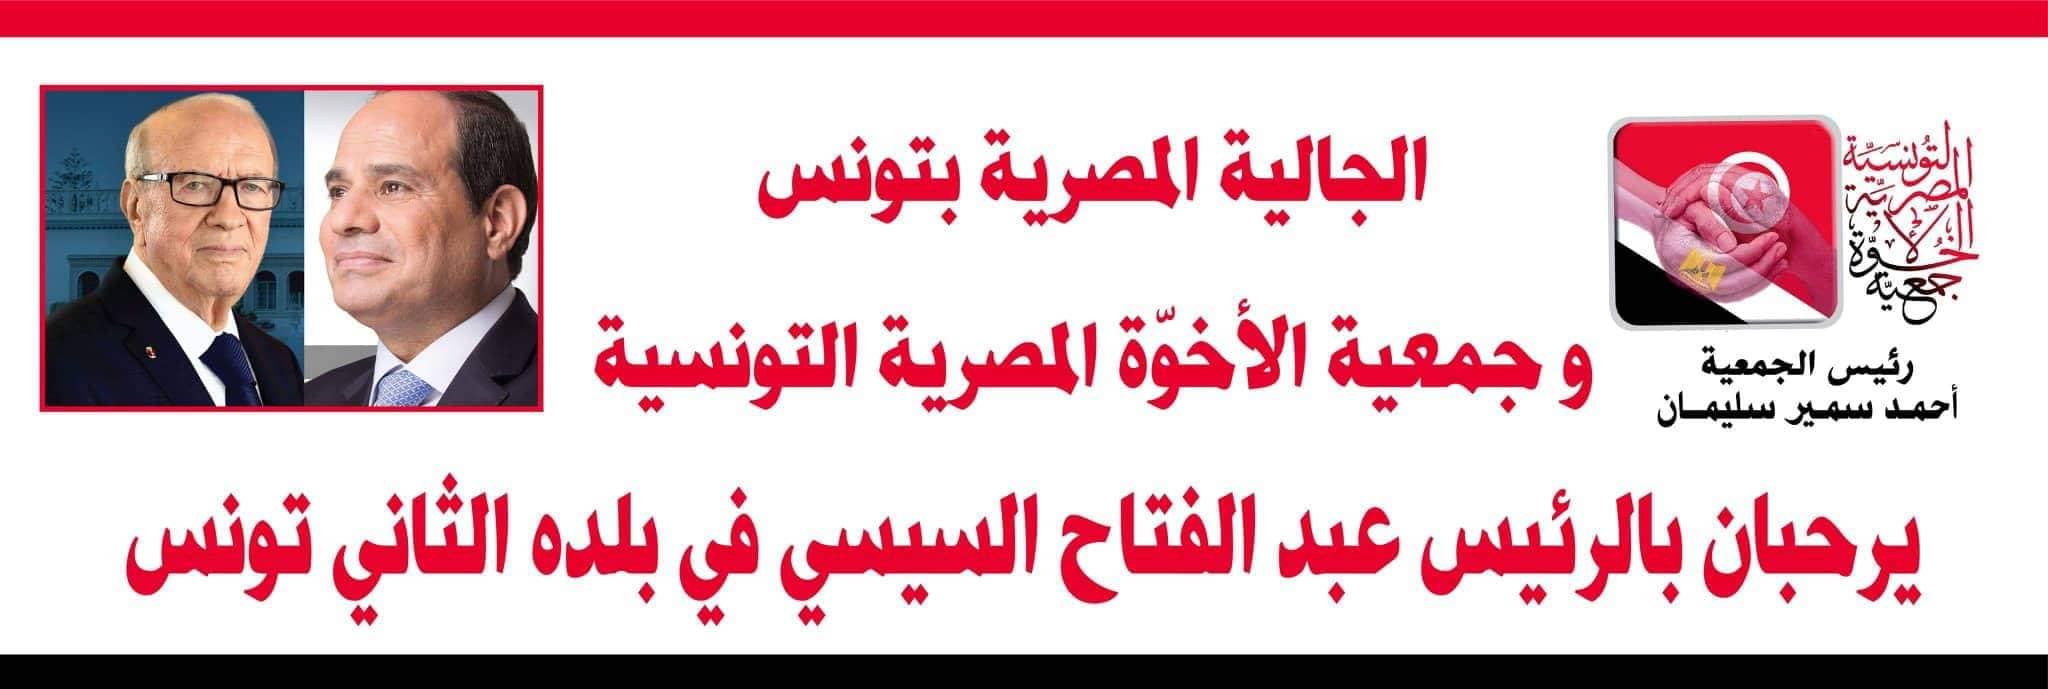 جمعية الاخوّة المصرية التونسية والجالية المصرية للسيسي أهلا بكم في تونس